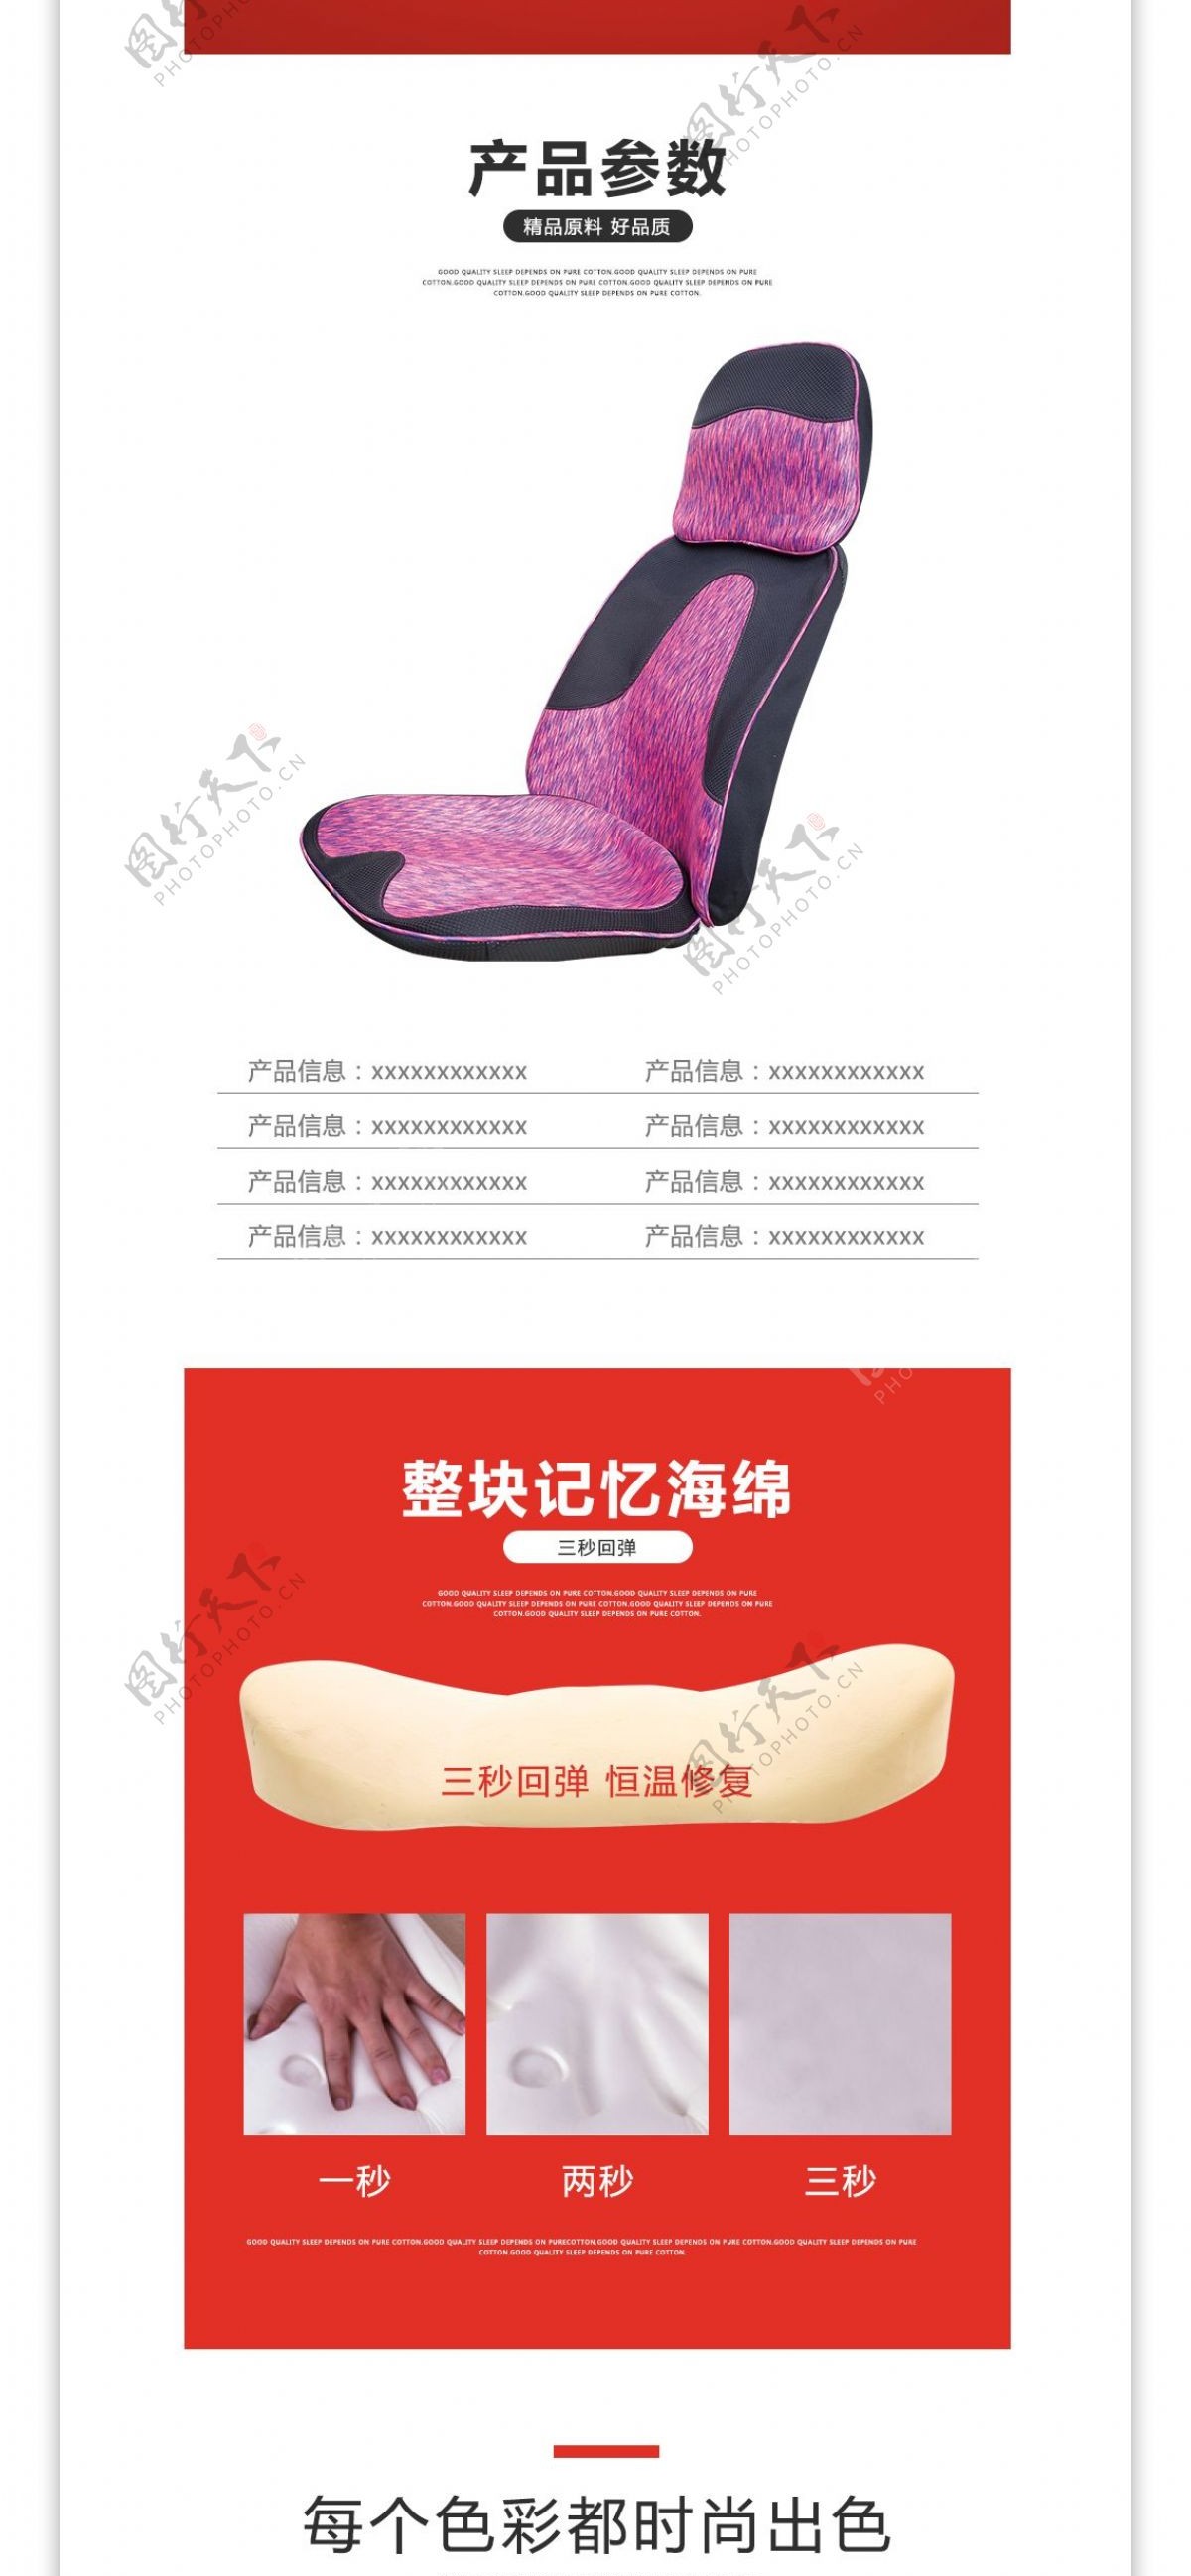 淘宝天猫红色座椅多功能坐垫详情页描述